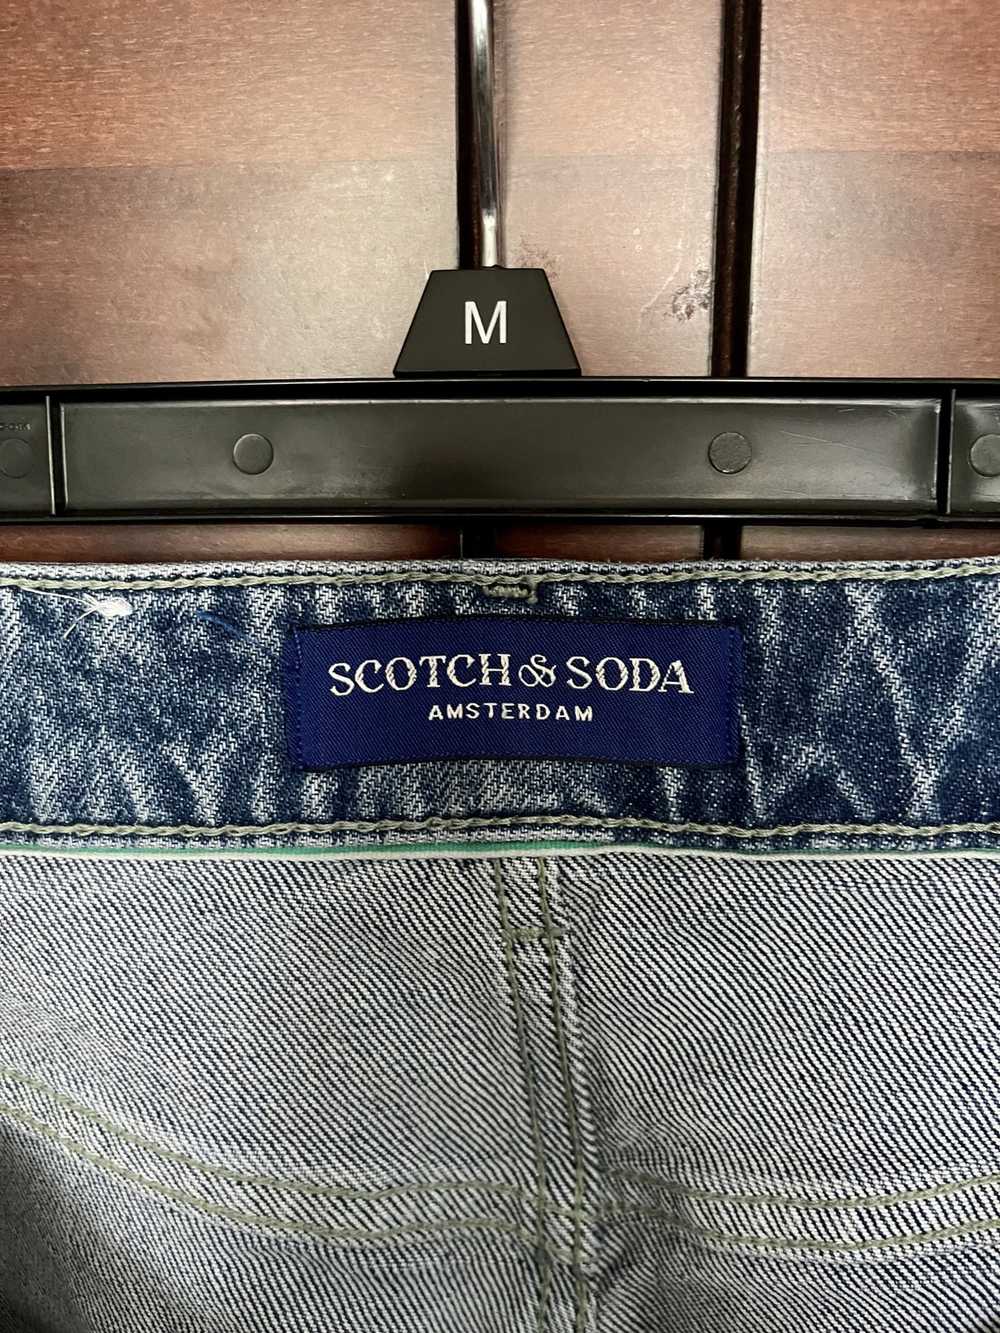 Scotch & Soda Scotch & Soda Denim Jeans - image 3